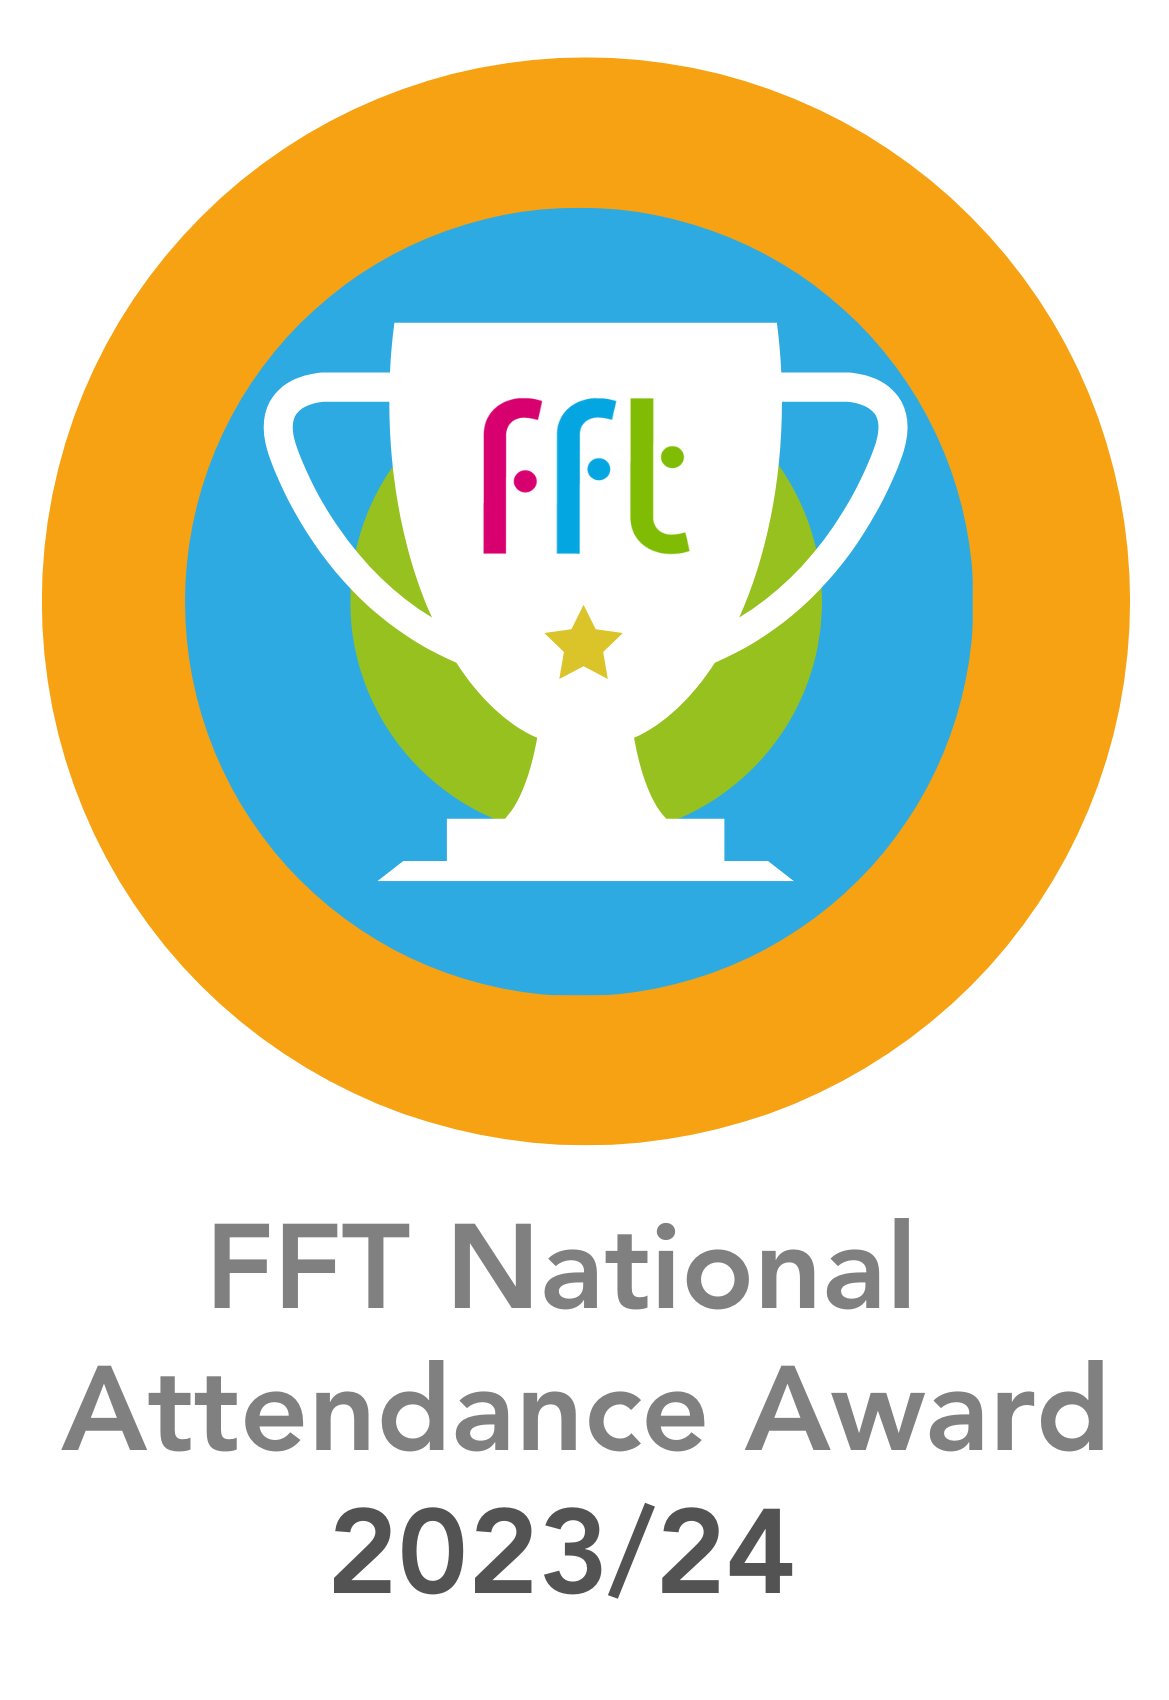 FFT attendance